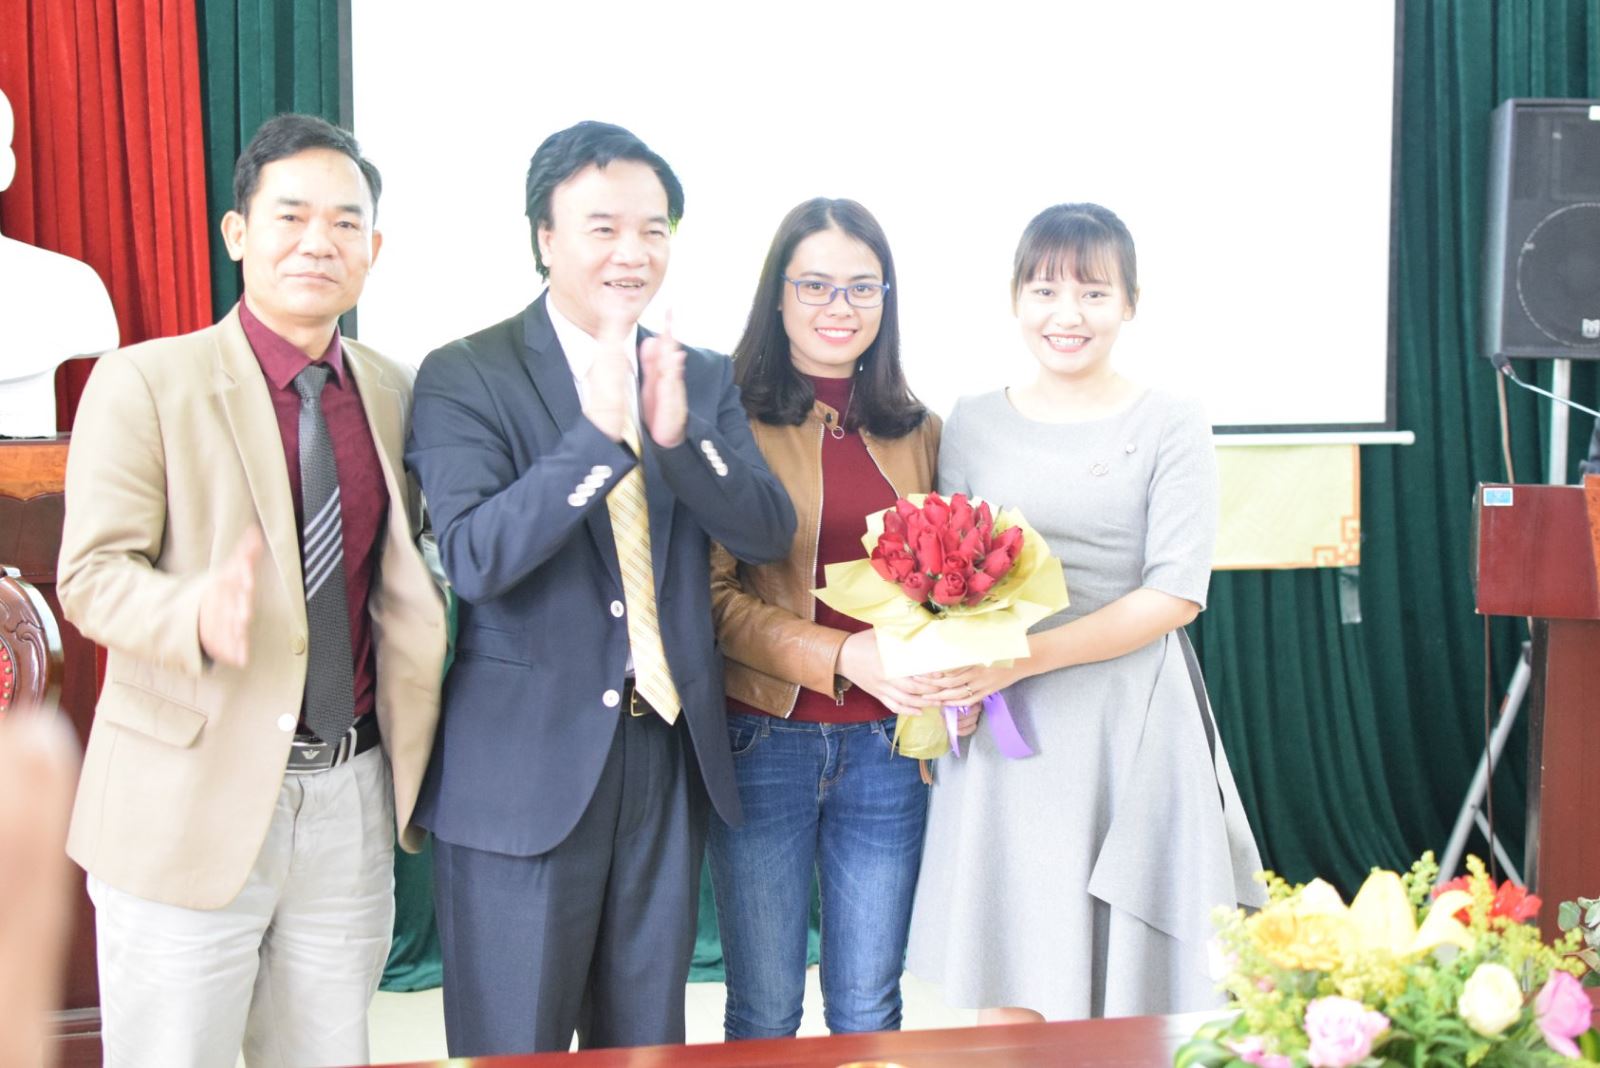 Giám đốc và phó giám đốc thay mặt tặng hoa cho chị em phụ nữ